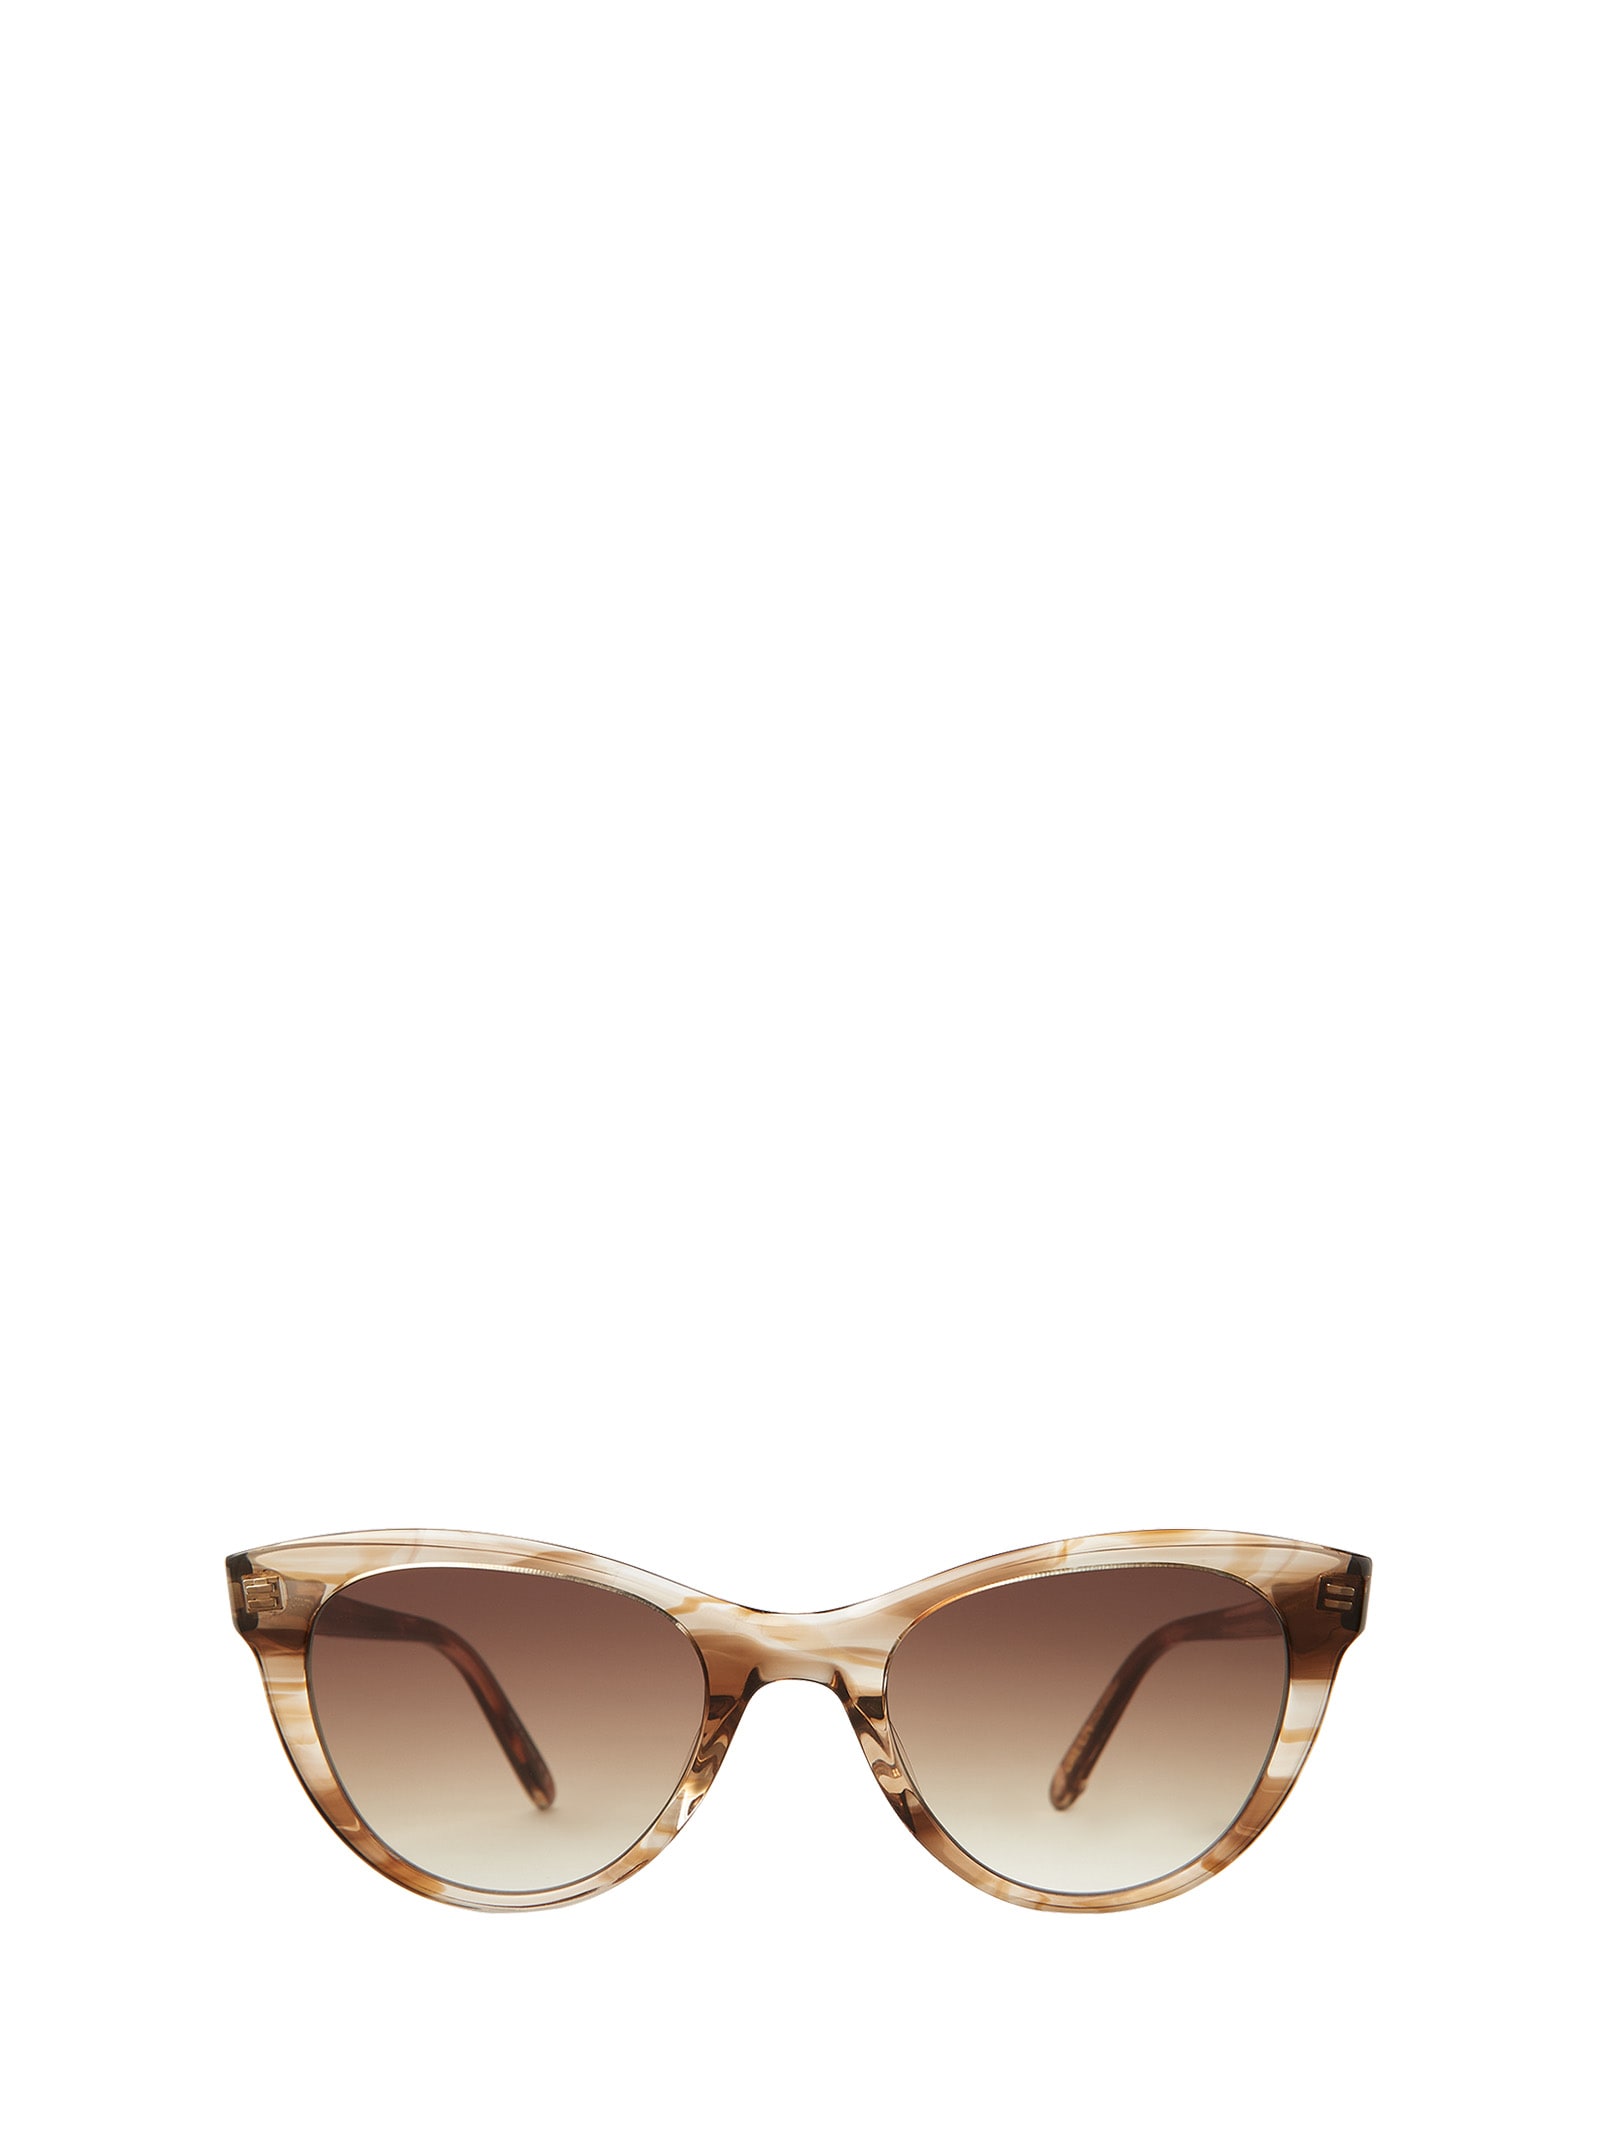 Glco X Clare V. Sun Bio Oak Sunglasses